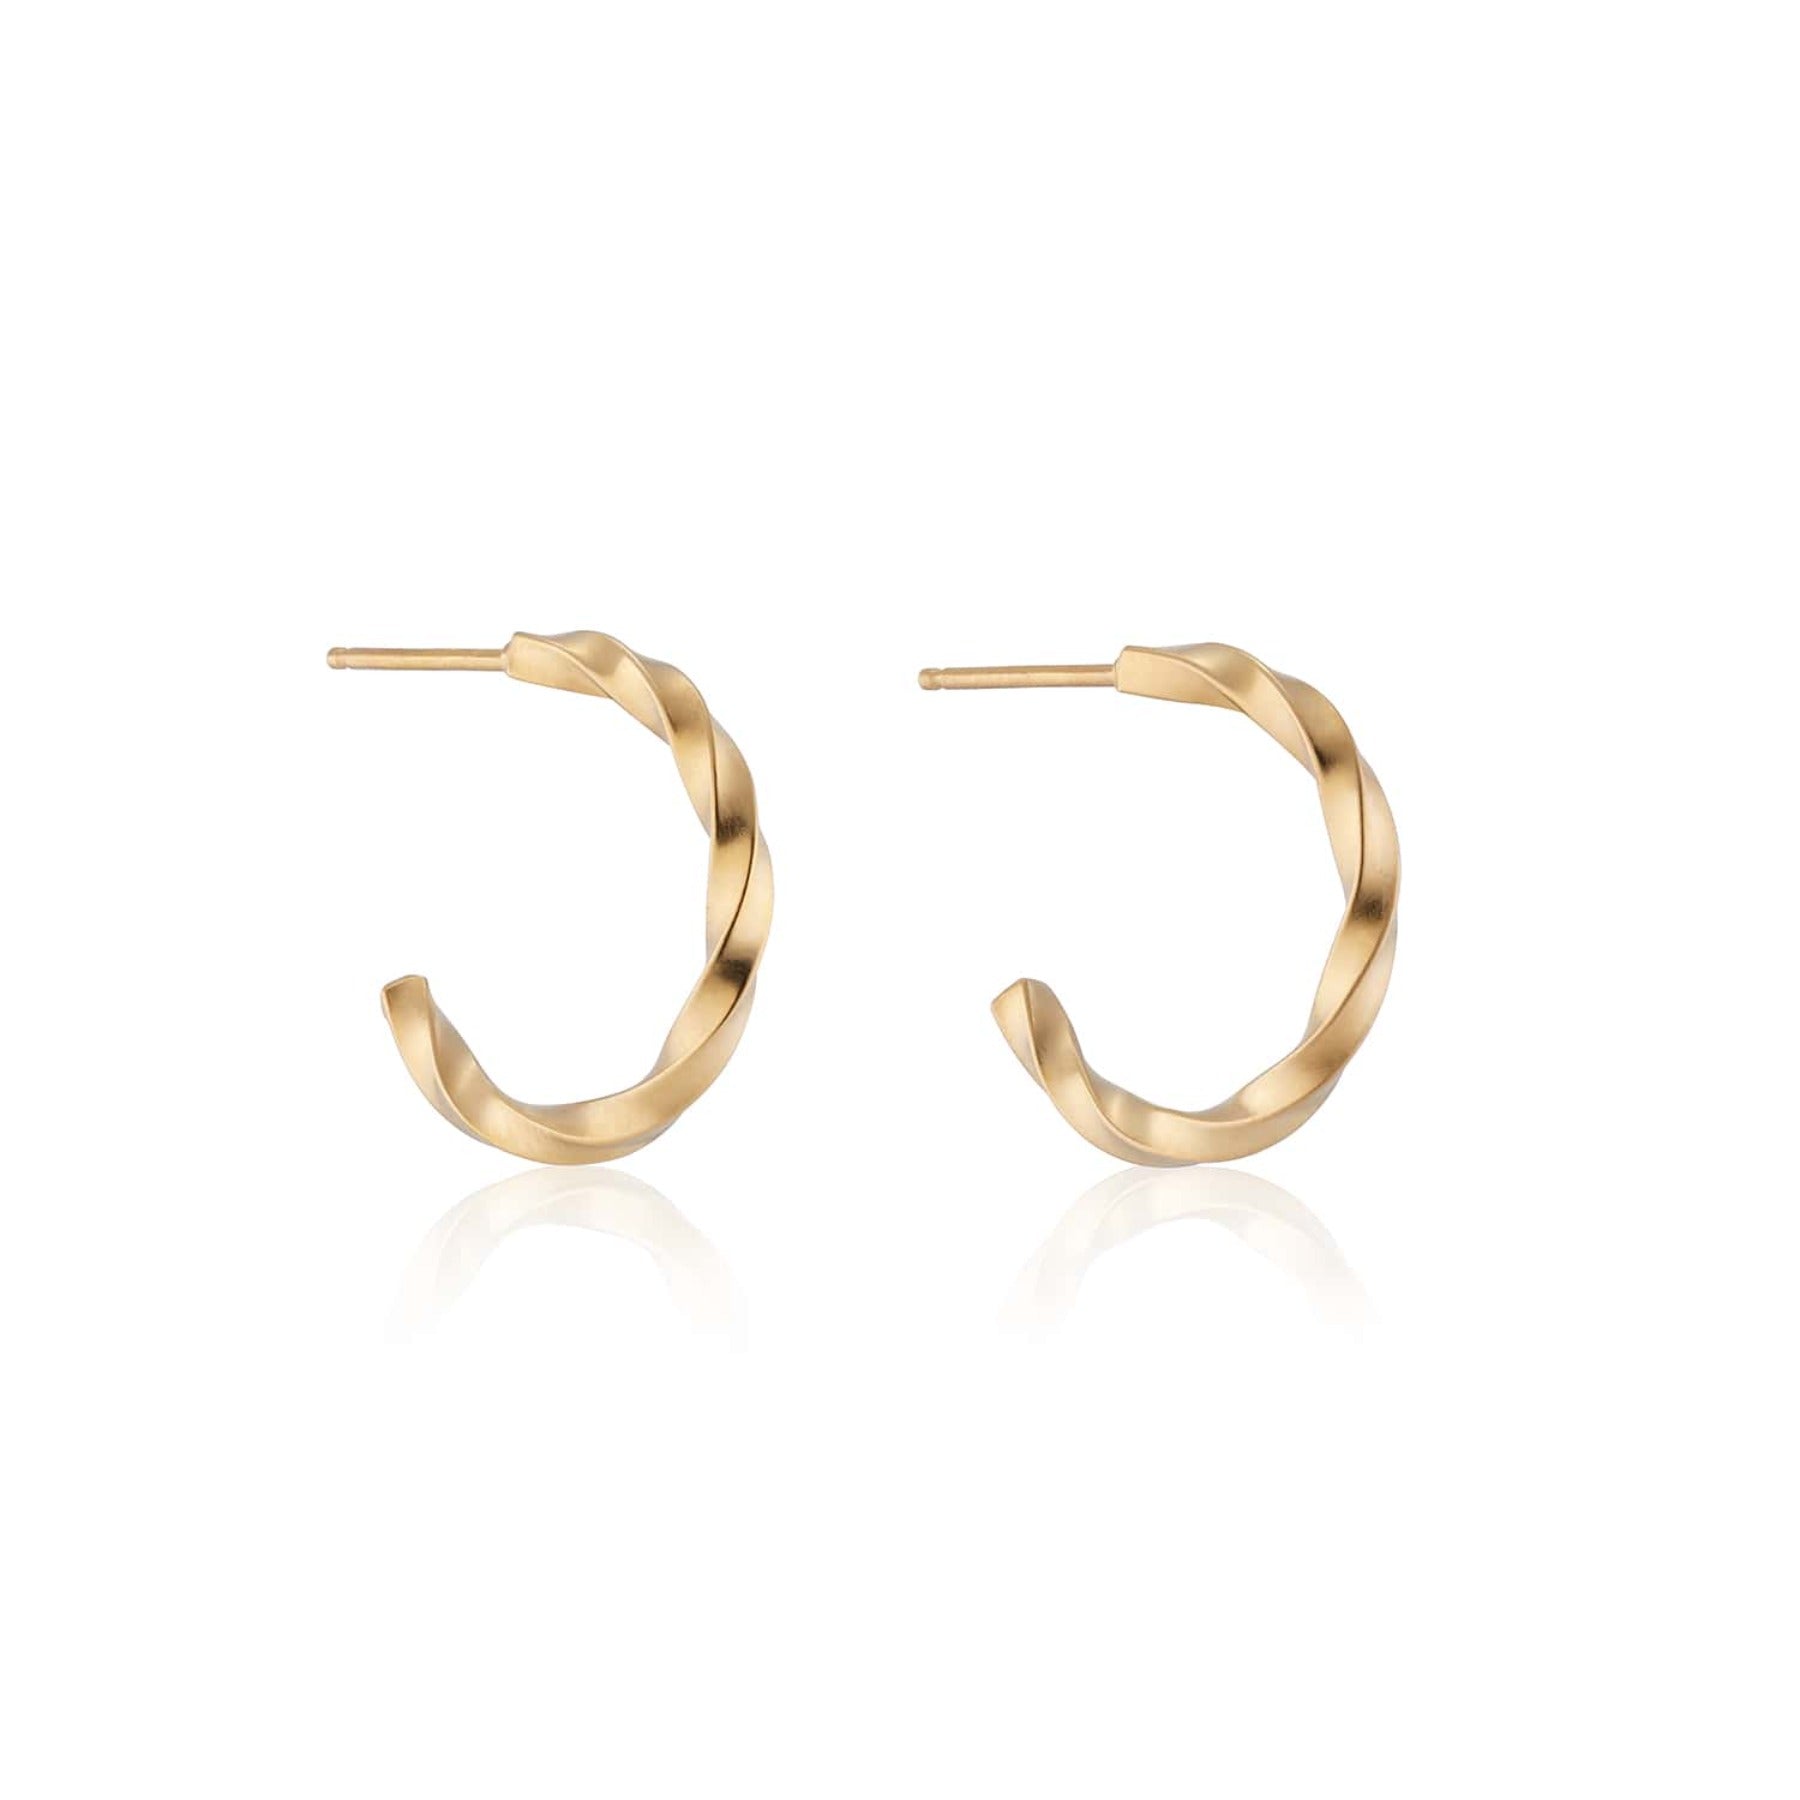 Twisted small hoop earrings in 18k gold vermeil.